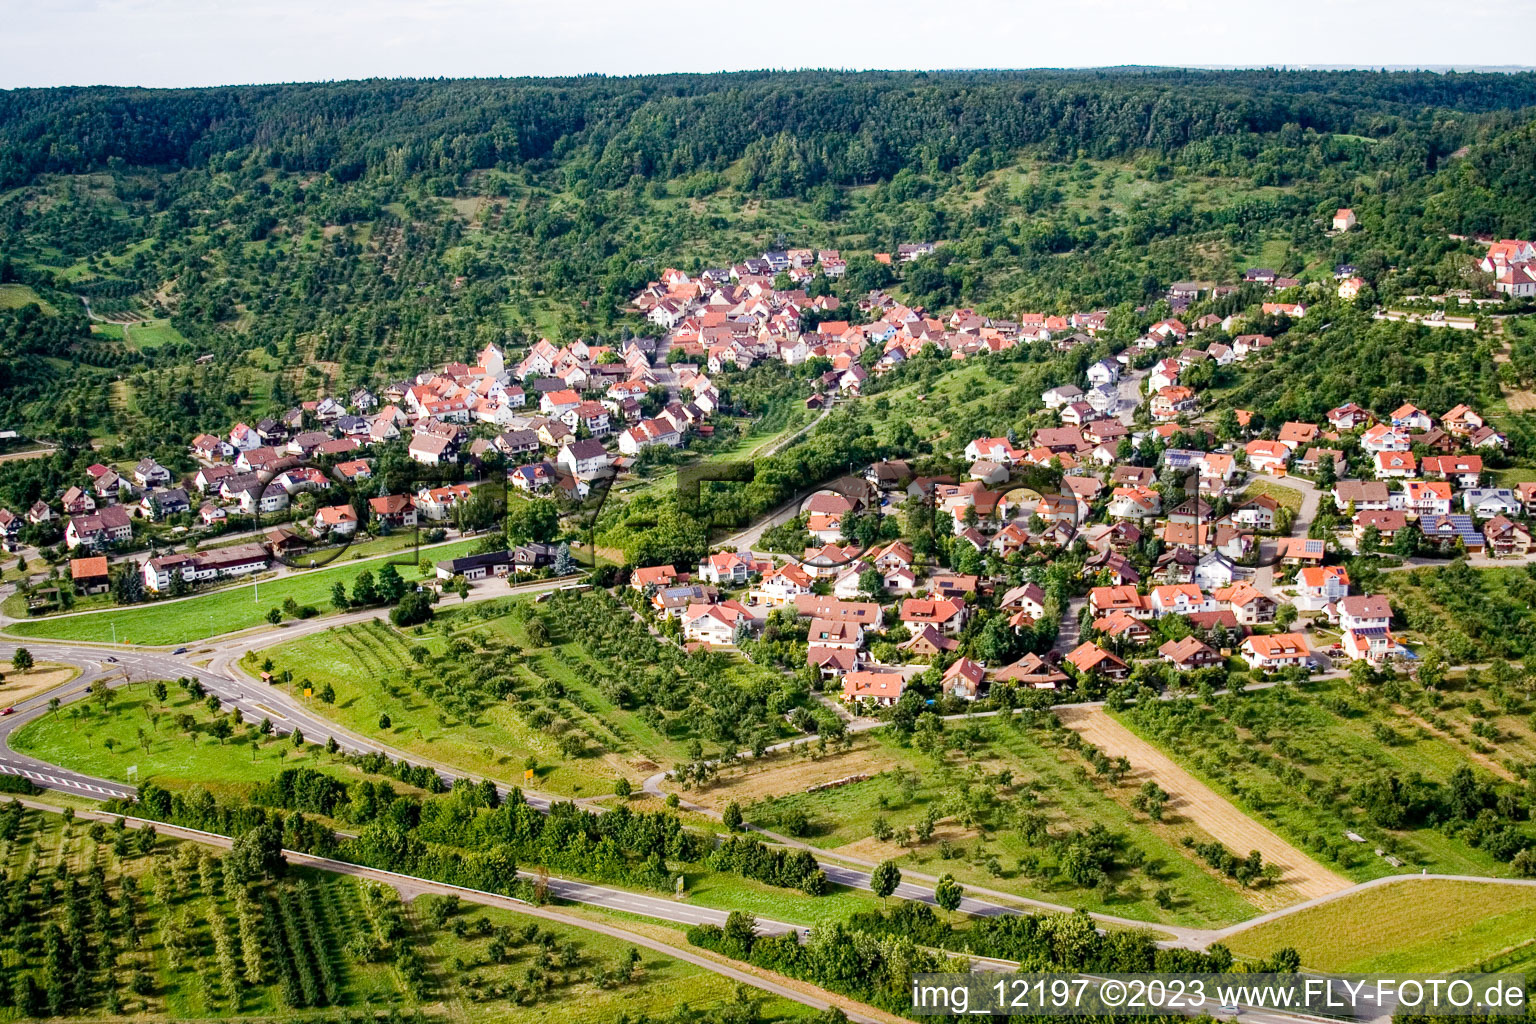 Luftbild von Ortsteil Mönchberg in Herrenberg im Bundesland Baden-Württemberg, Deutschland